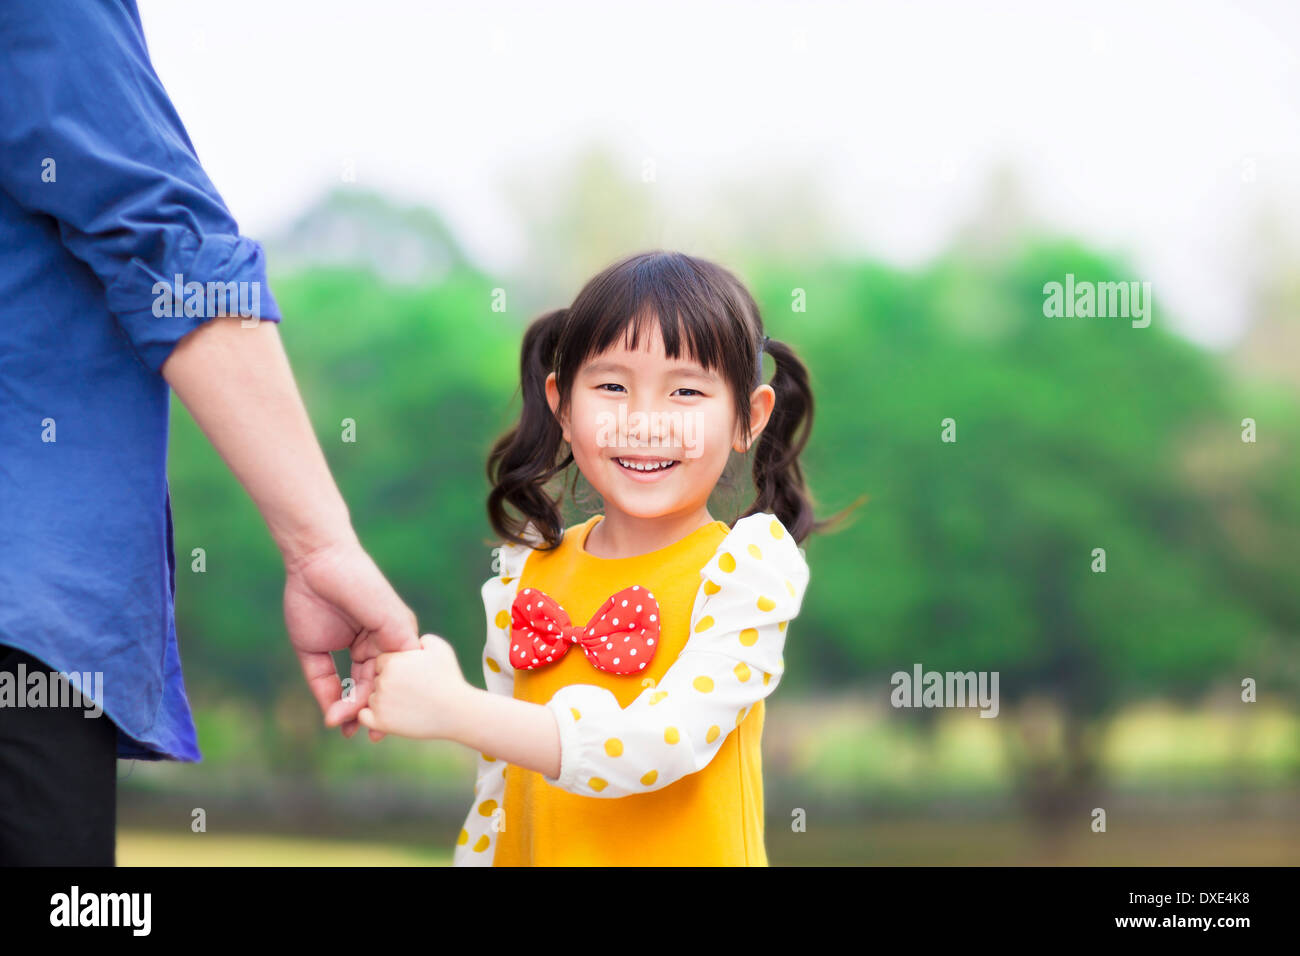 Linda chica asiática padre mantenga la mano en el parque Foto de stock